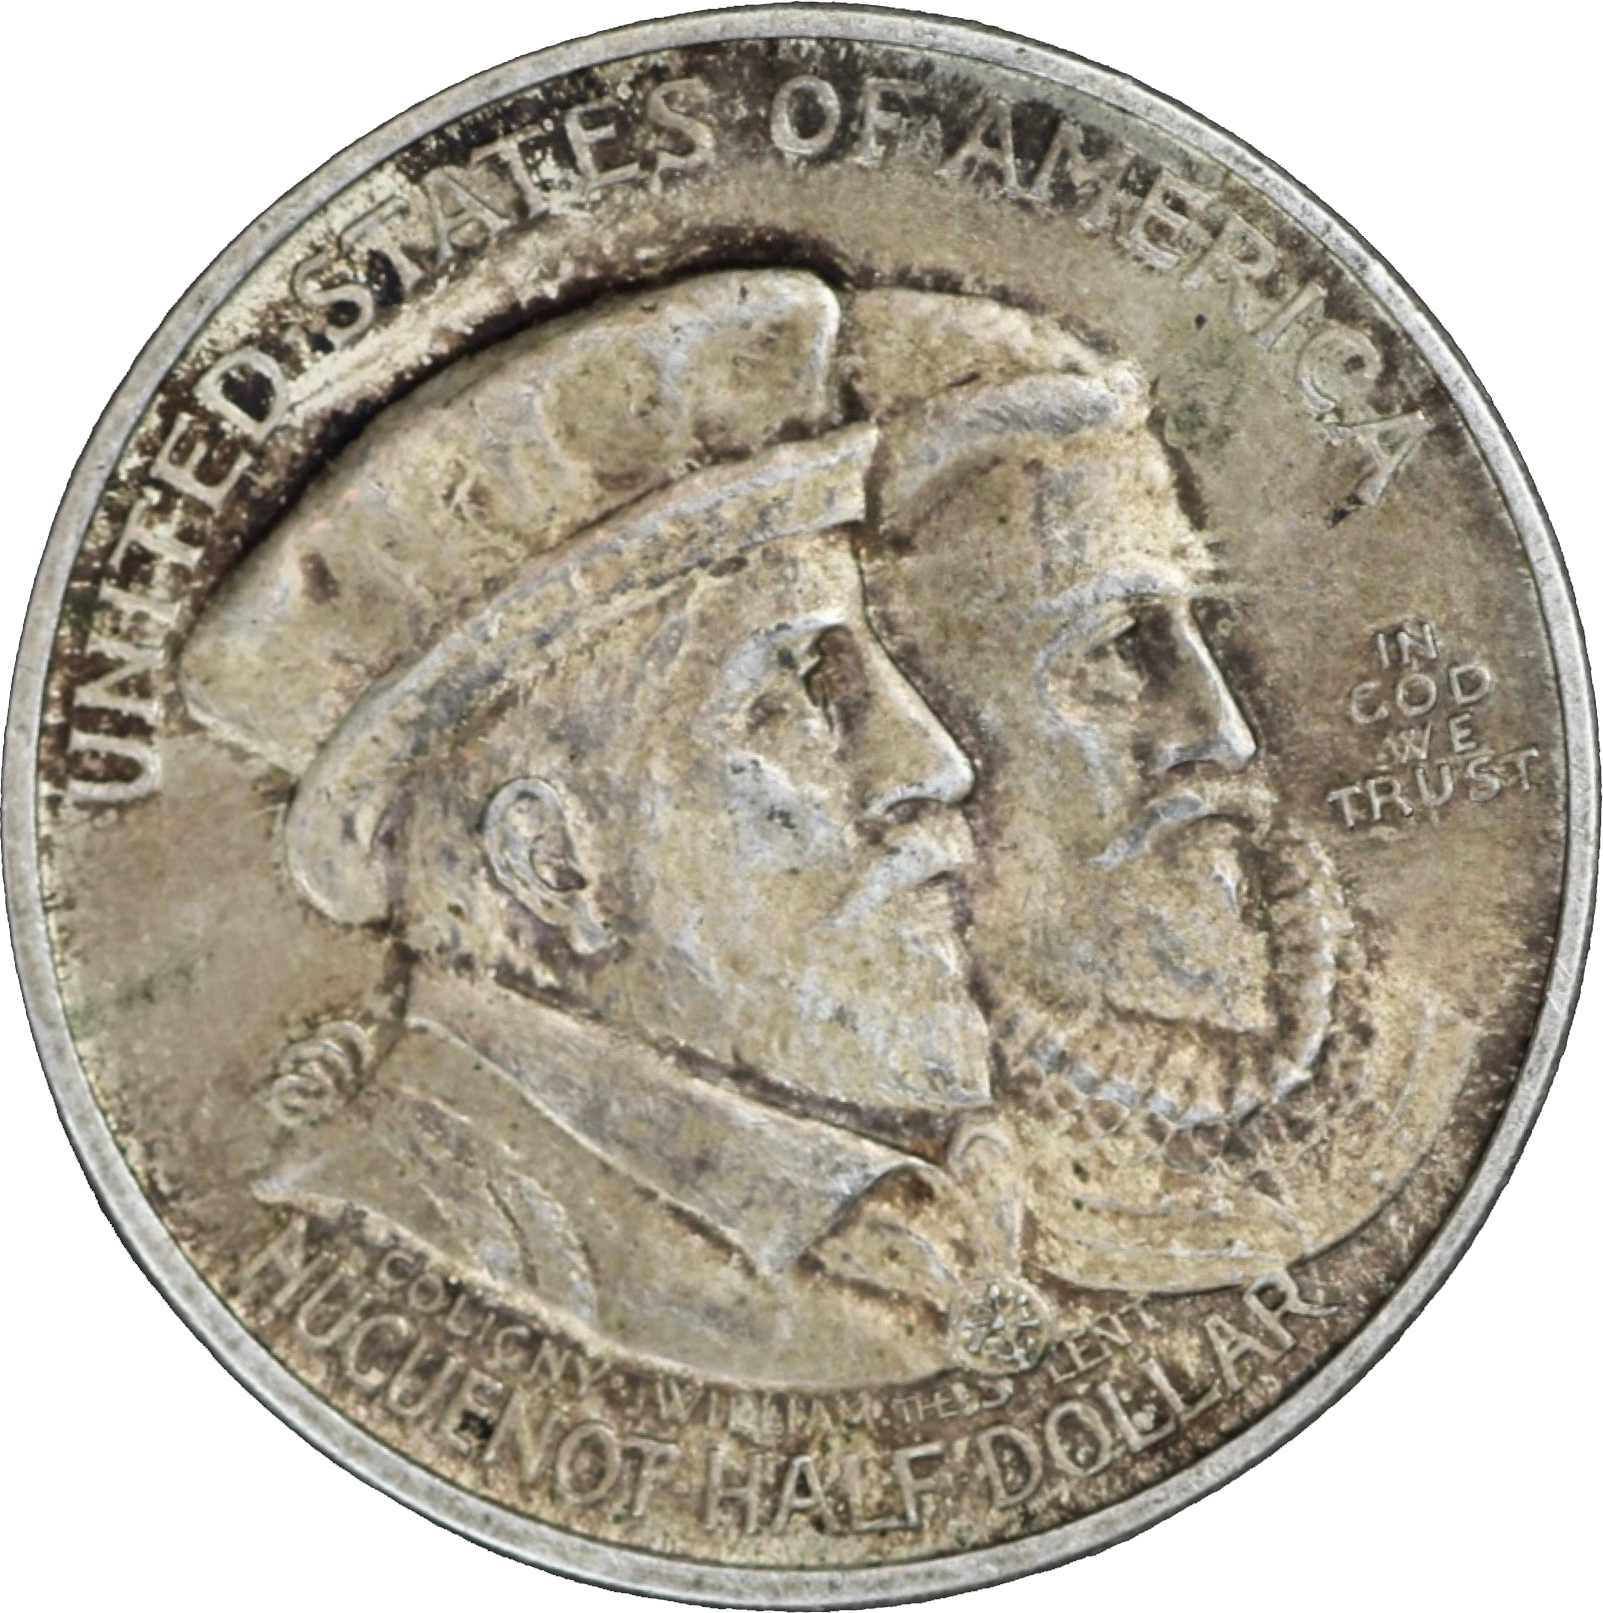  Silver Commemorative (1892 - 1954) 